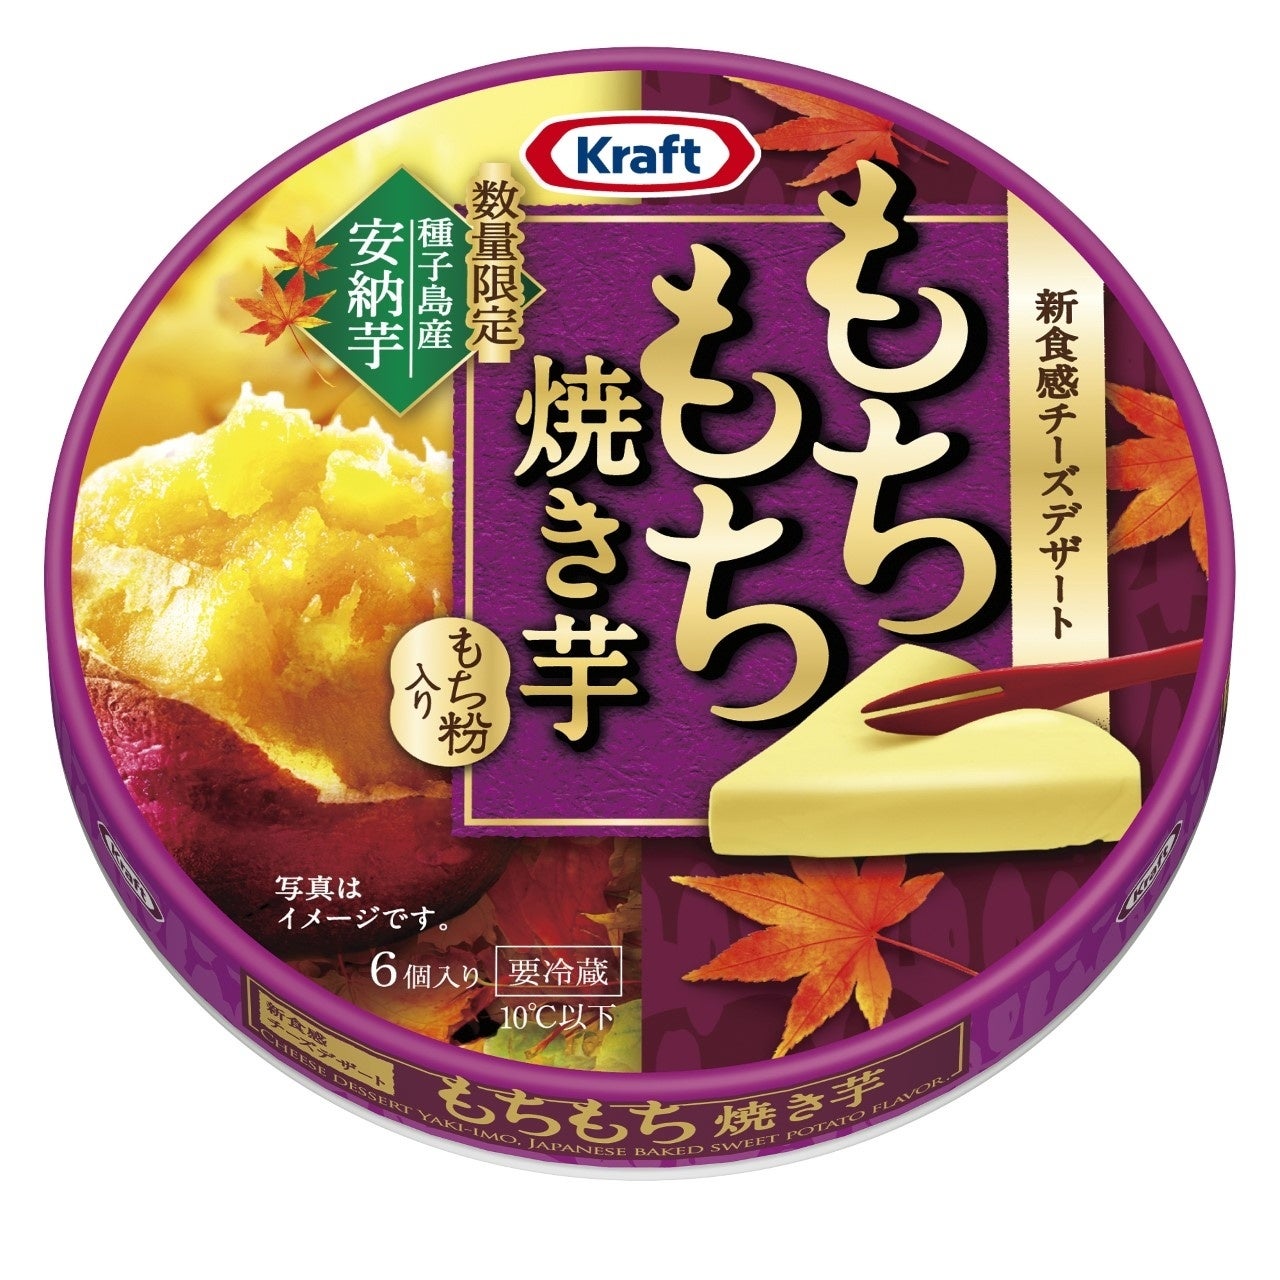 “新食感”チーズデザートシリーズ×秋の味覚“焼き芋”「クラフト もちもち焼き芋6P」